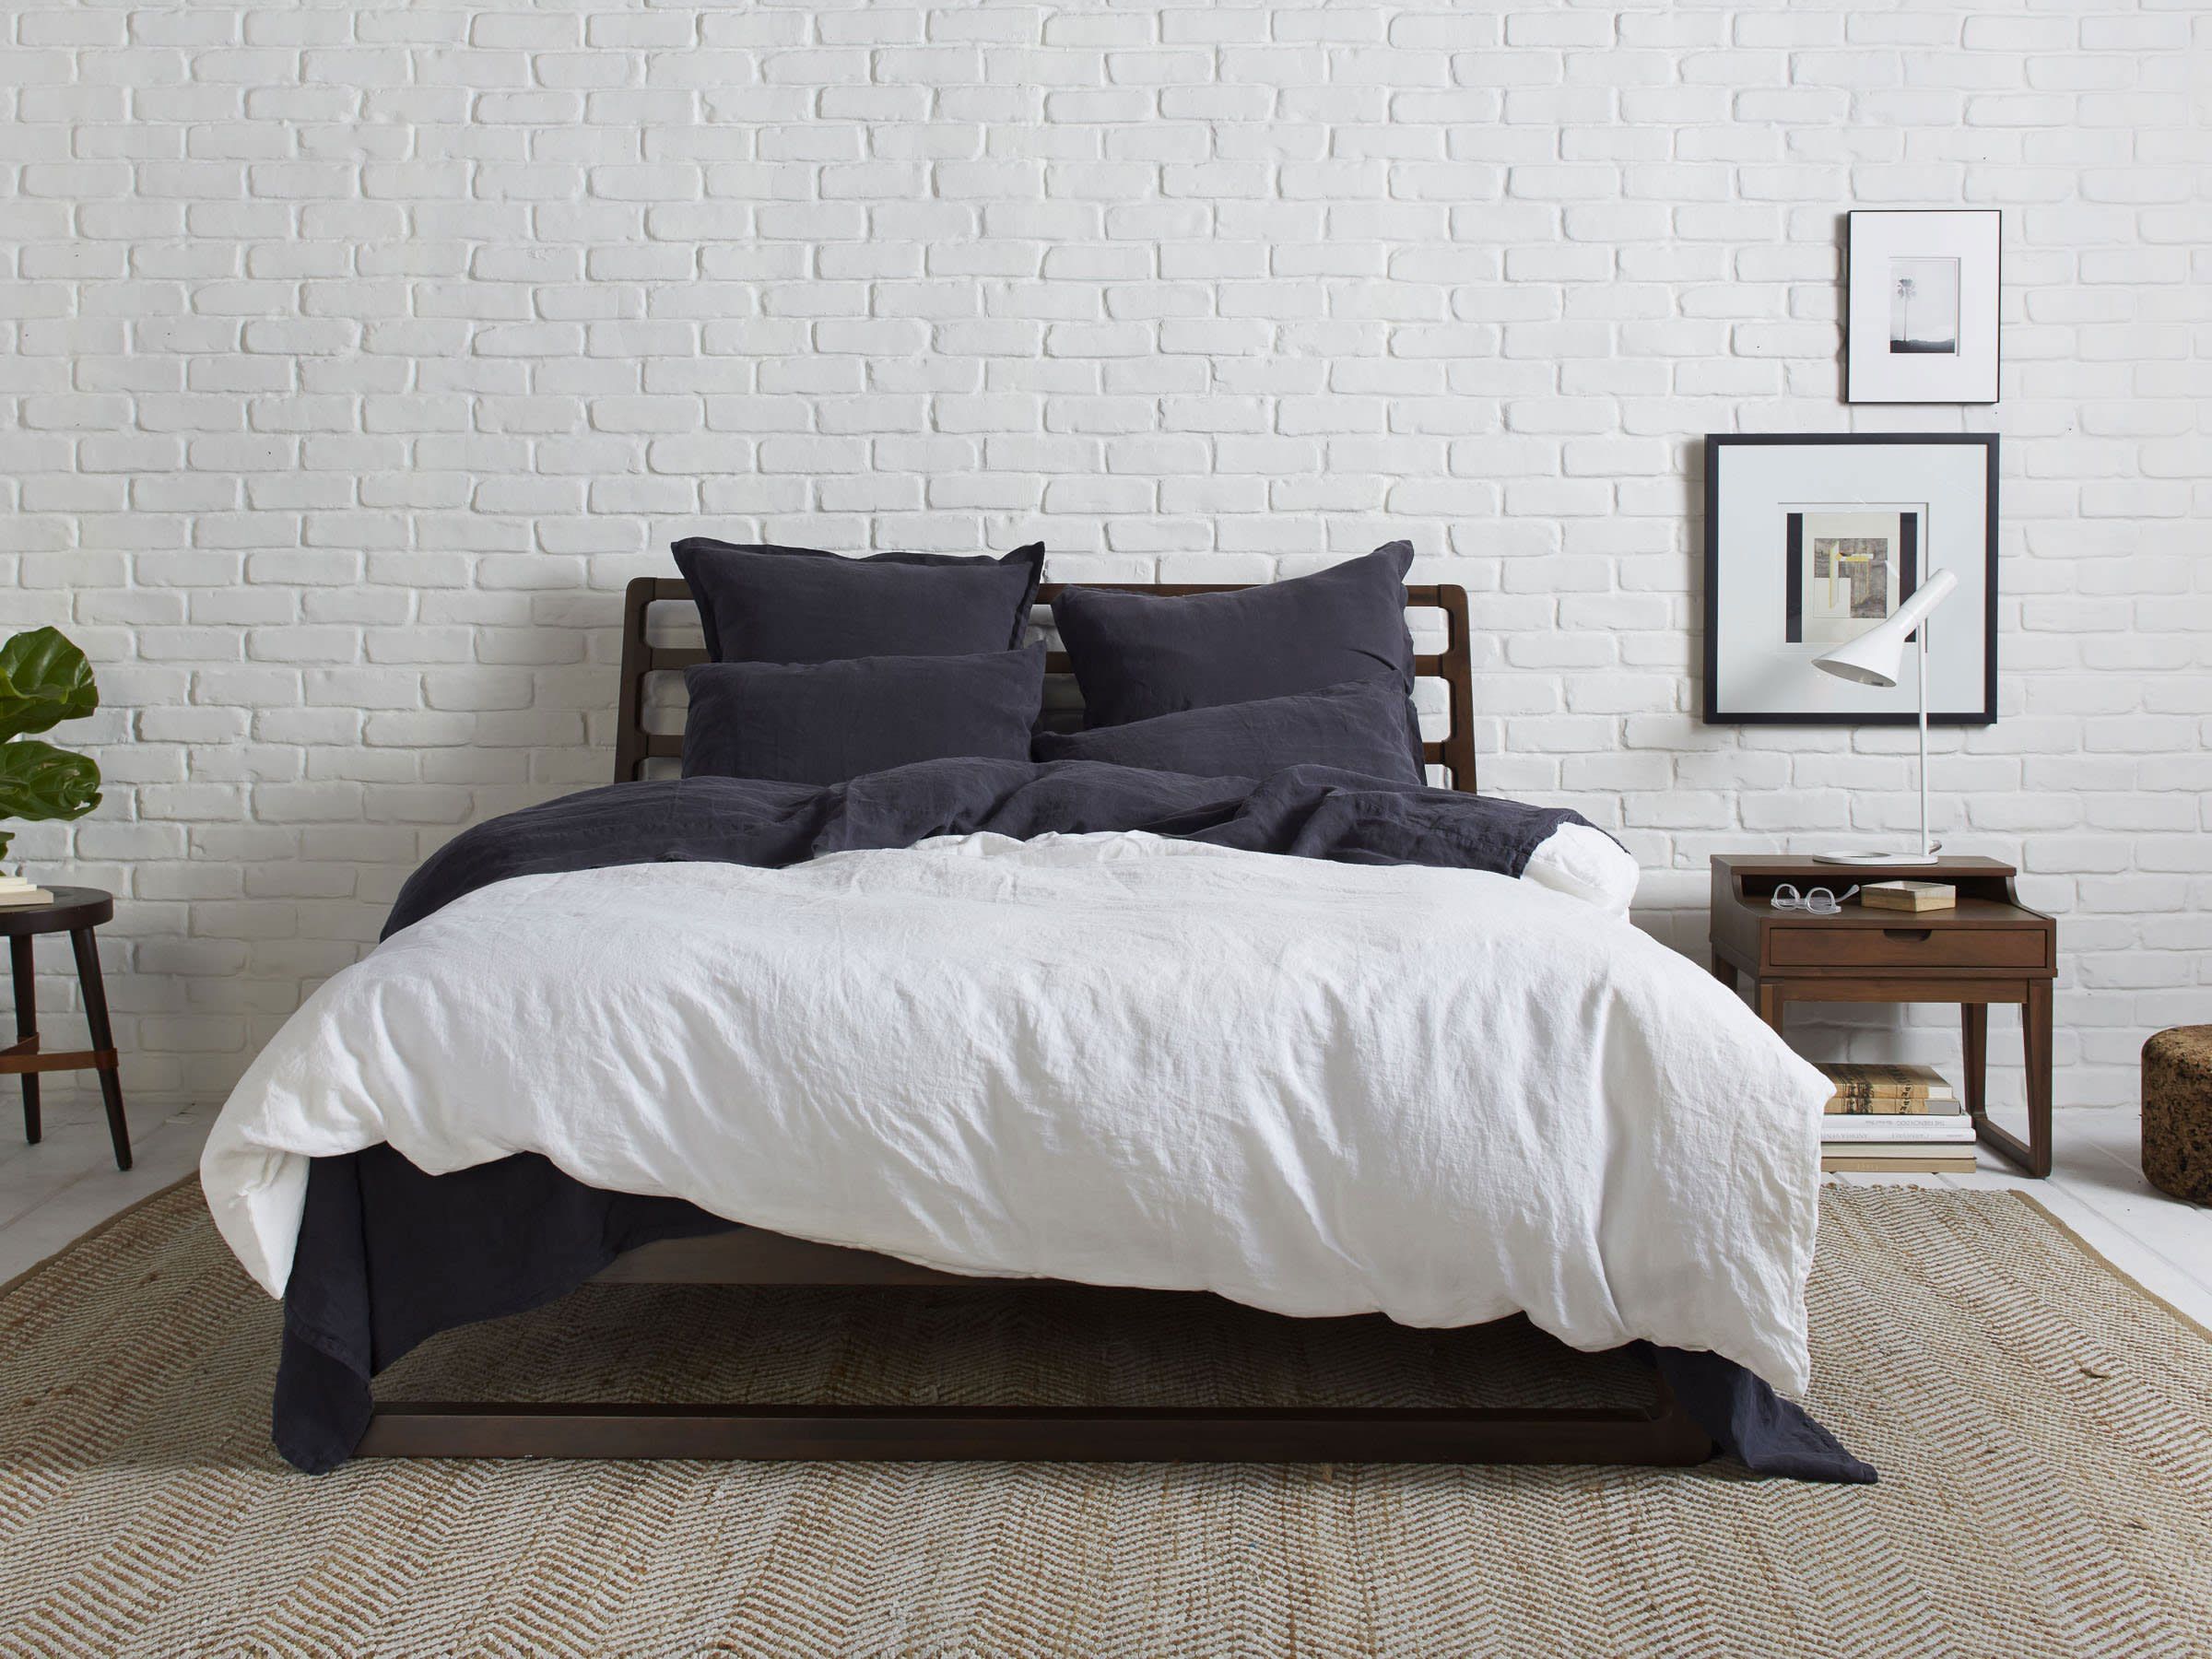 Handmade Crushed Velvet Bed Runner Throw Soft Feel Home Decor Sofa Cover Blanket 